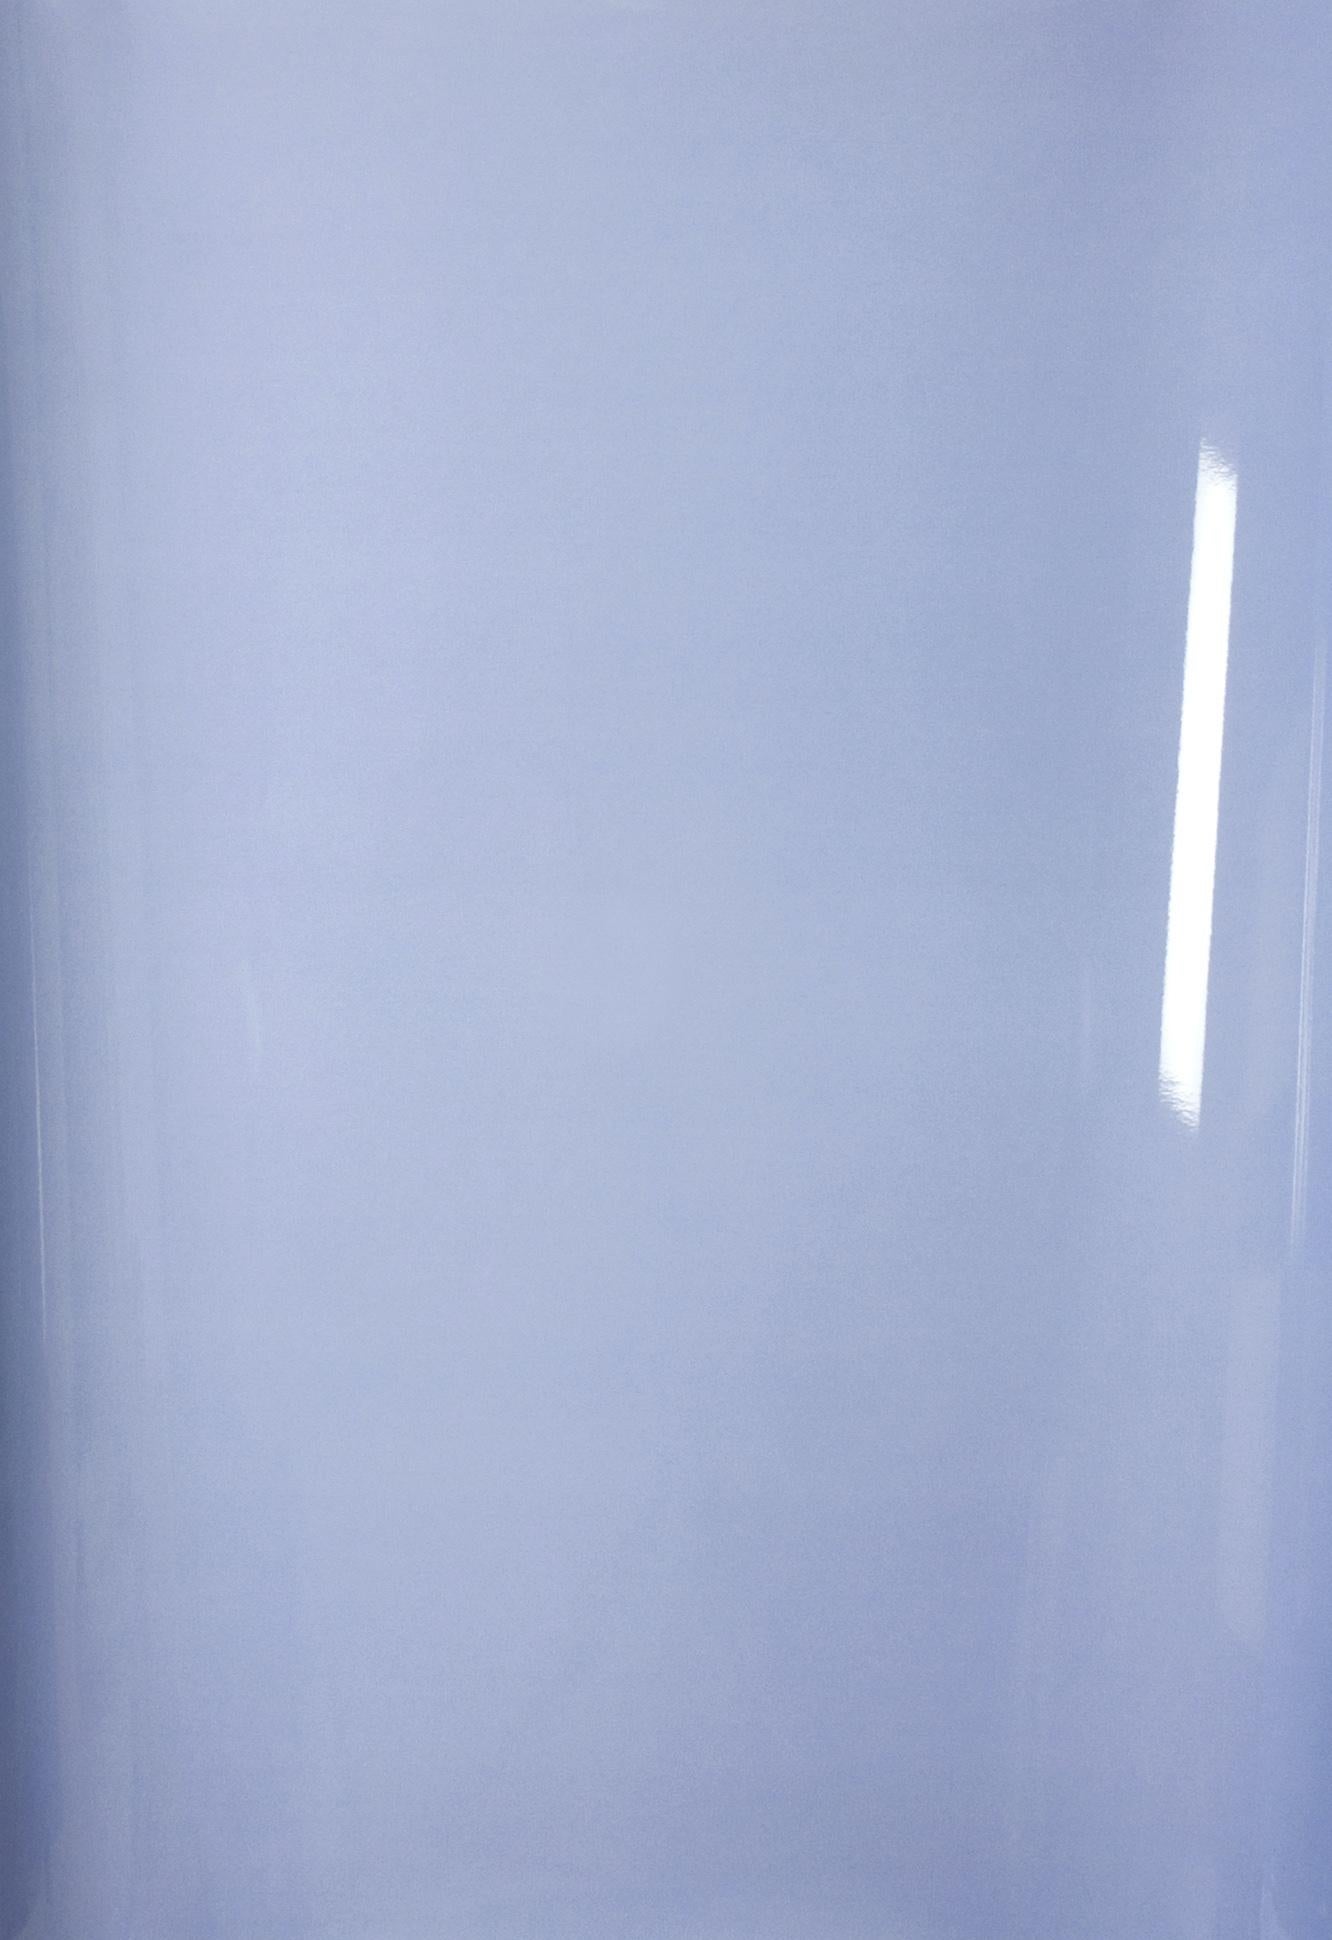 Abstract Photograph Ulrike Königshofer - Ombres sur papier, n° 2 - Photographie abstraite contemporaine en camaïeu de bleus